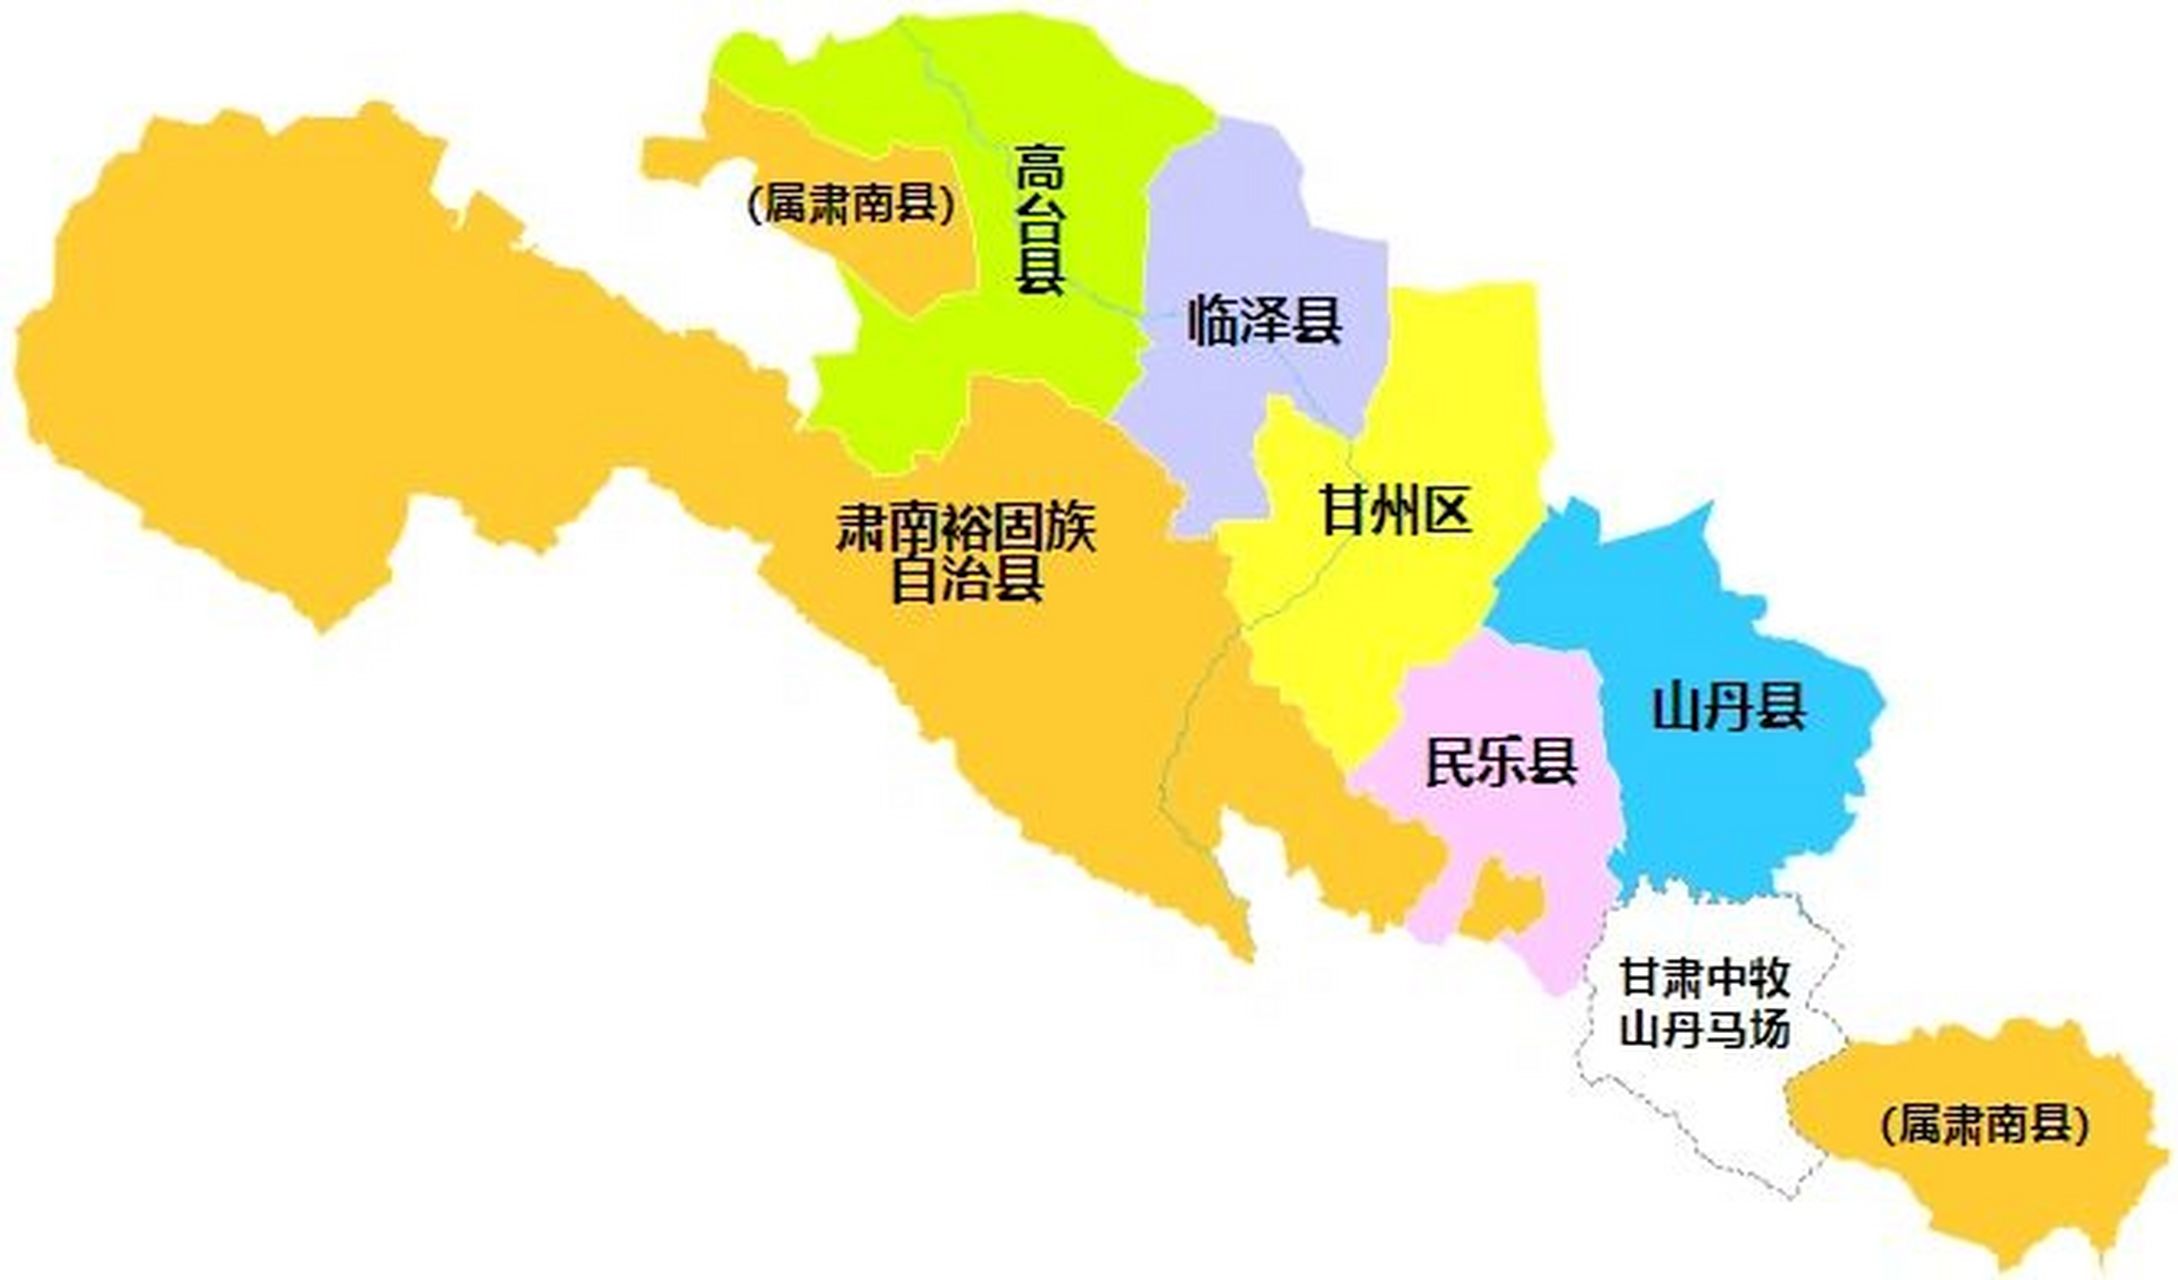 张掖行政区划 张掖市,甘肃省辖地级市,总面积为38600平方公里,常住